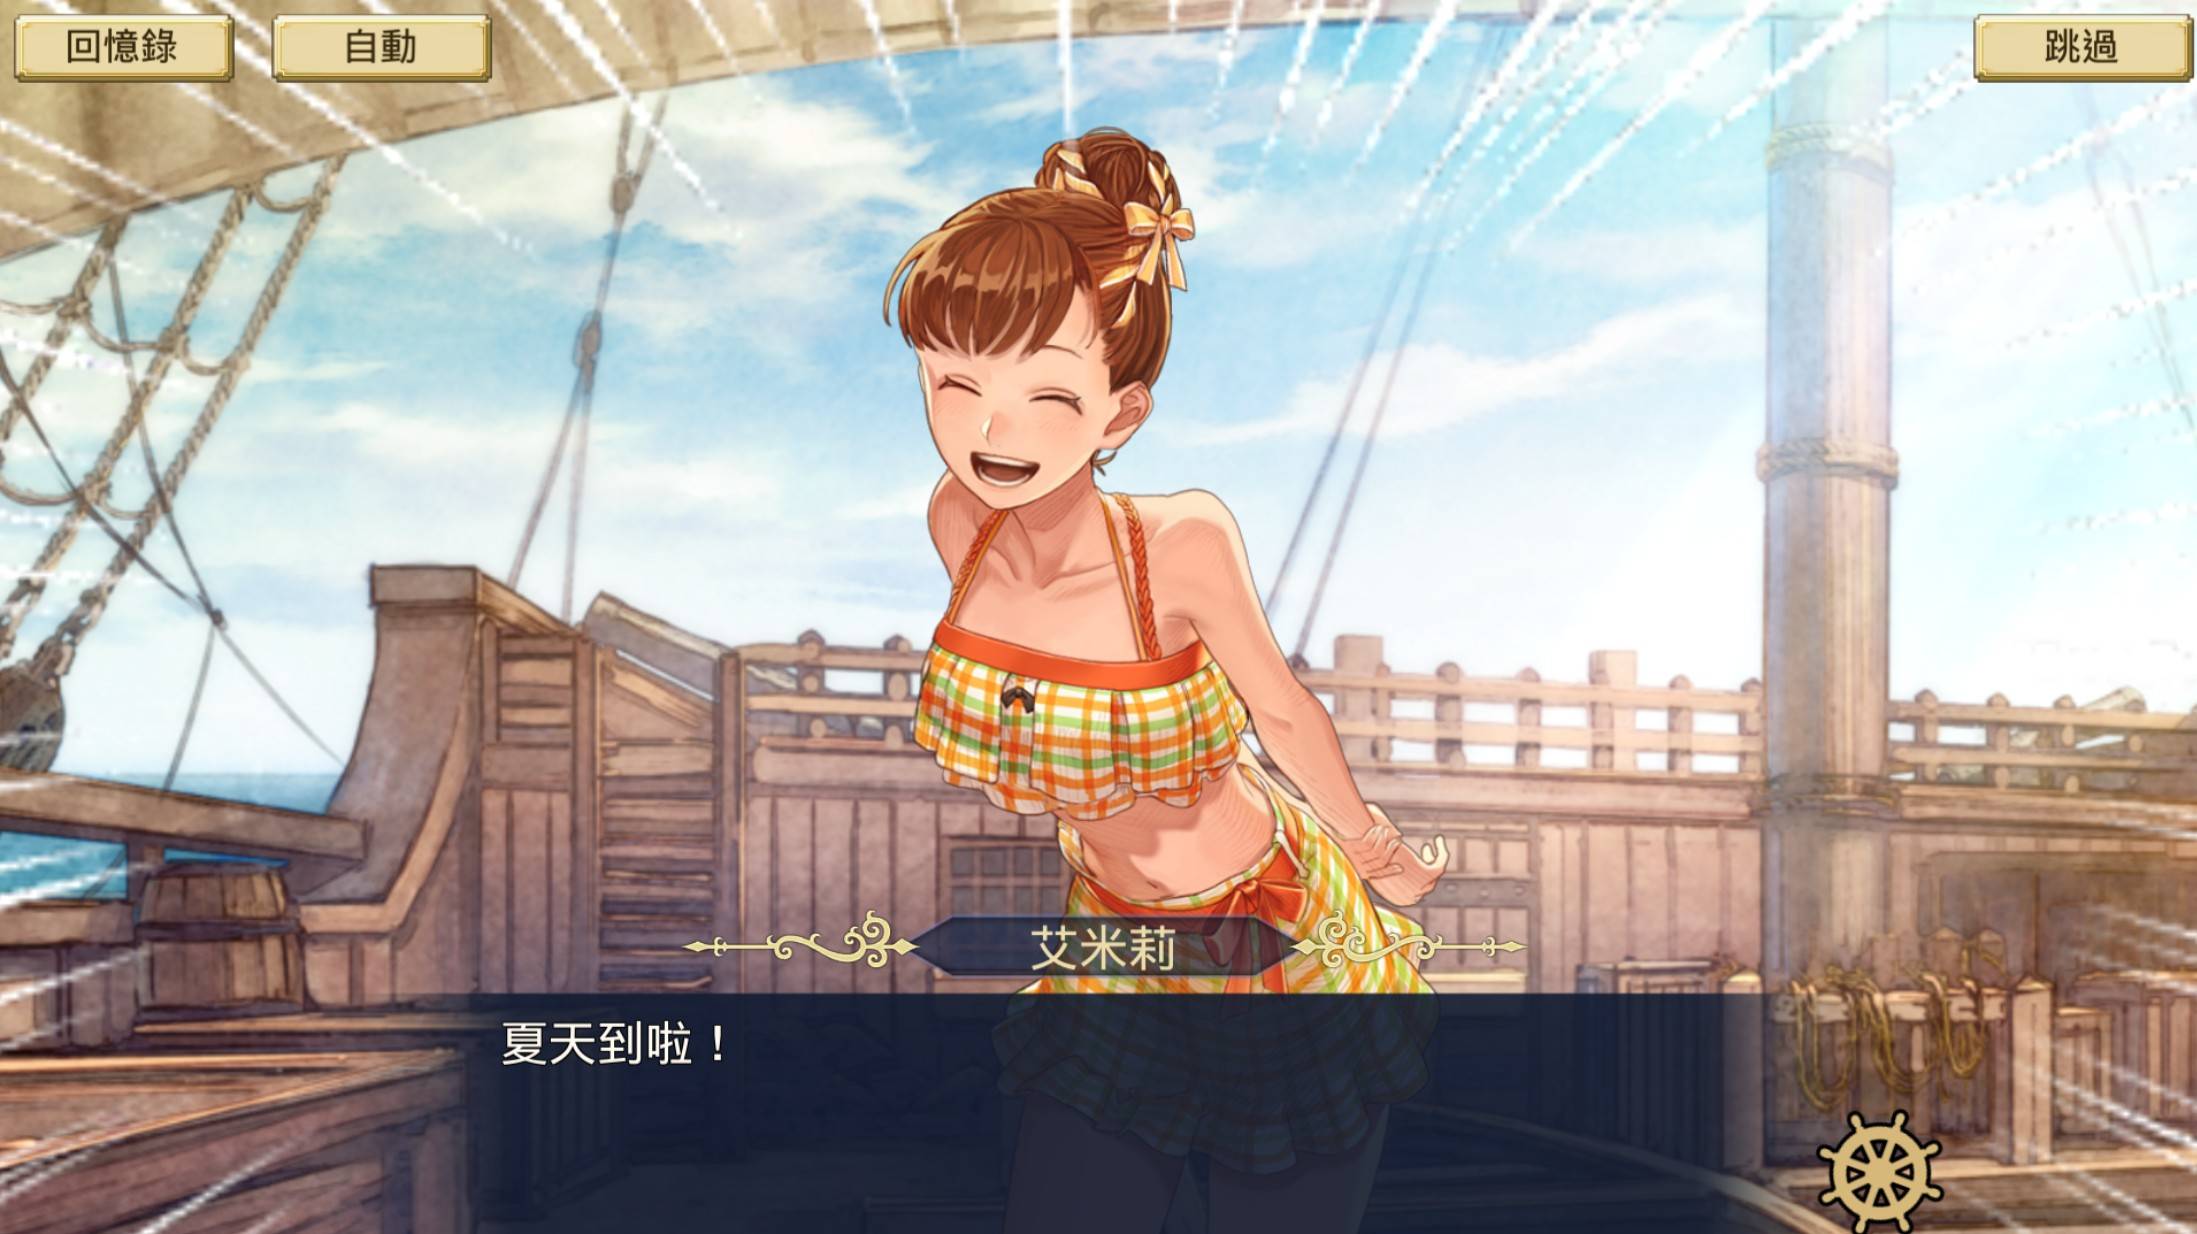 『大航海時代 VI 』繁體中文版 眾多泳裝打扮的航海士登場